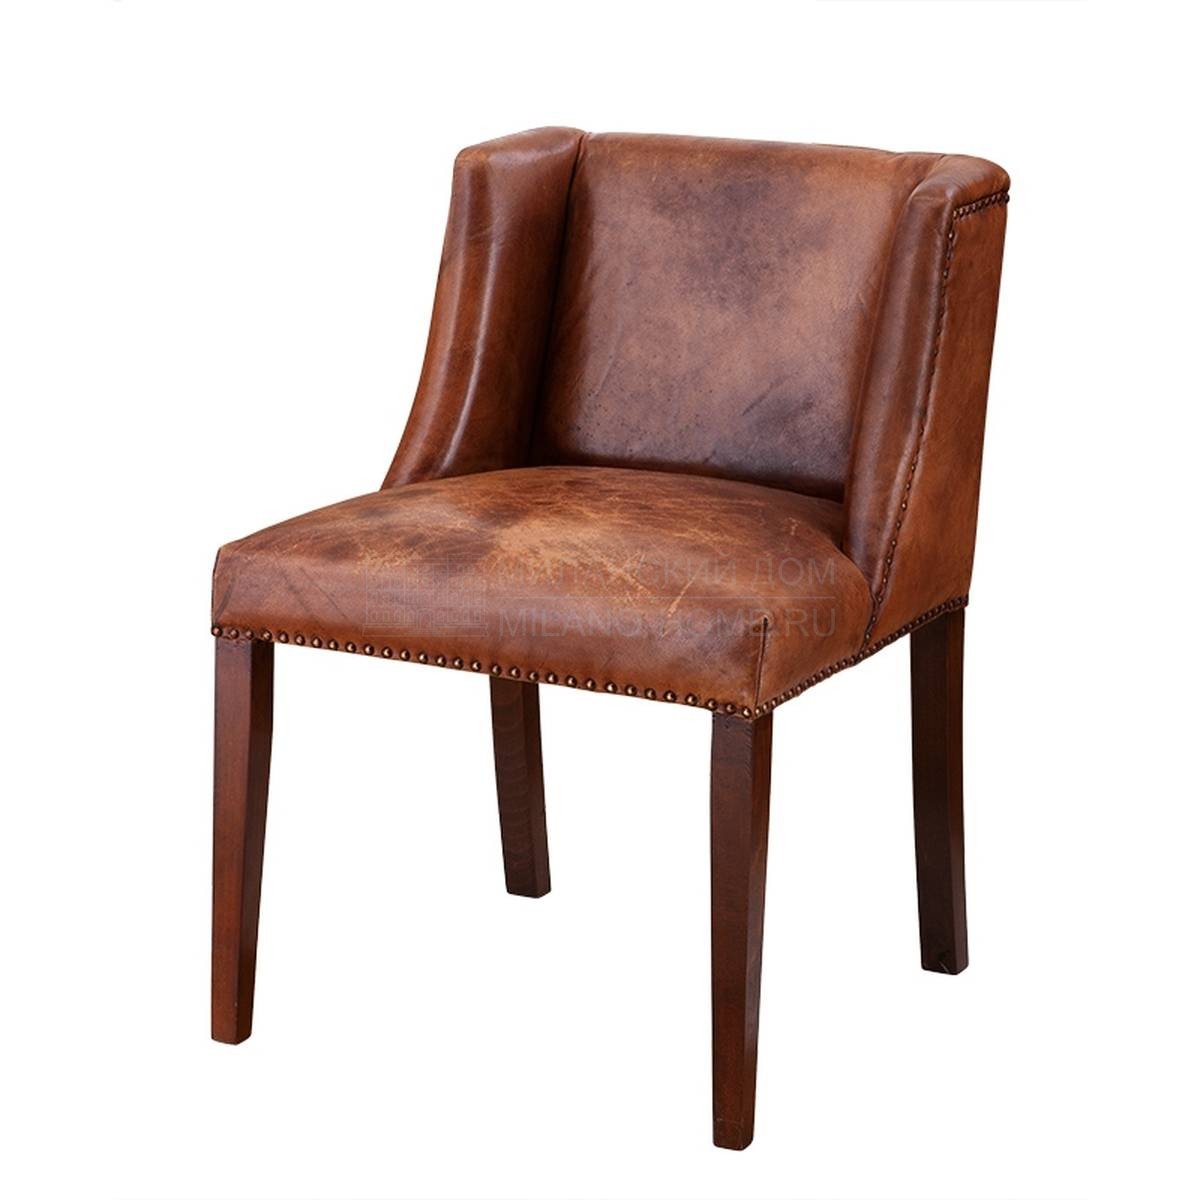 Кожаный стул St. James leather из Голландии фабрики EICHHOLTZ